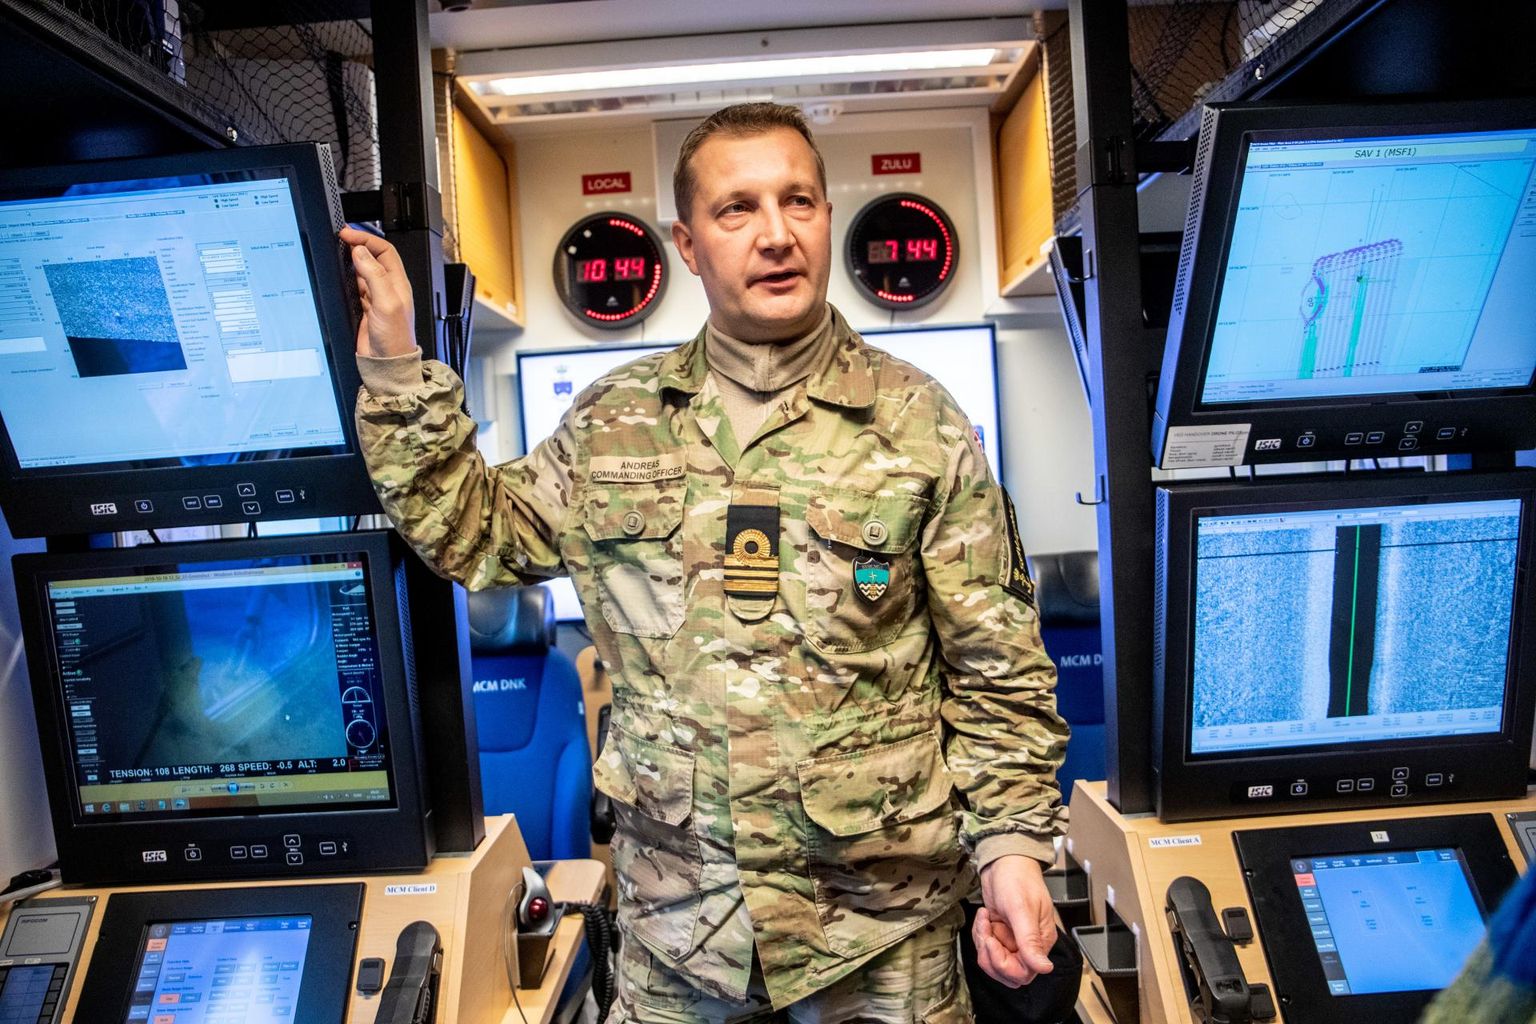 Kaptenleitnant Andreas Johansen näitab staabilaeva skaneerimisruumis, kuidas merepõhjas valitsev olukord arvutiekraanidele kuvatakse.